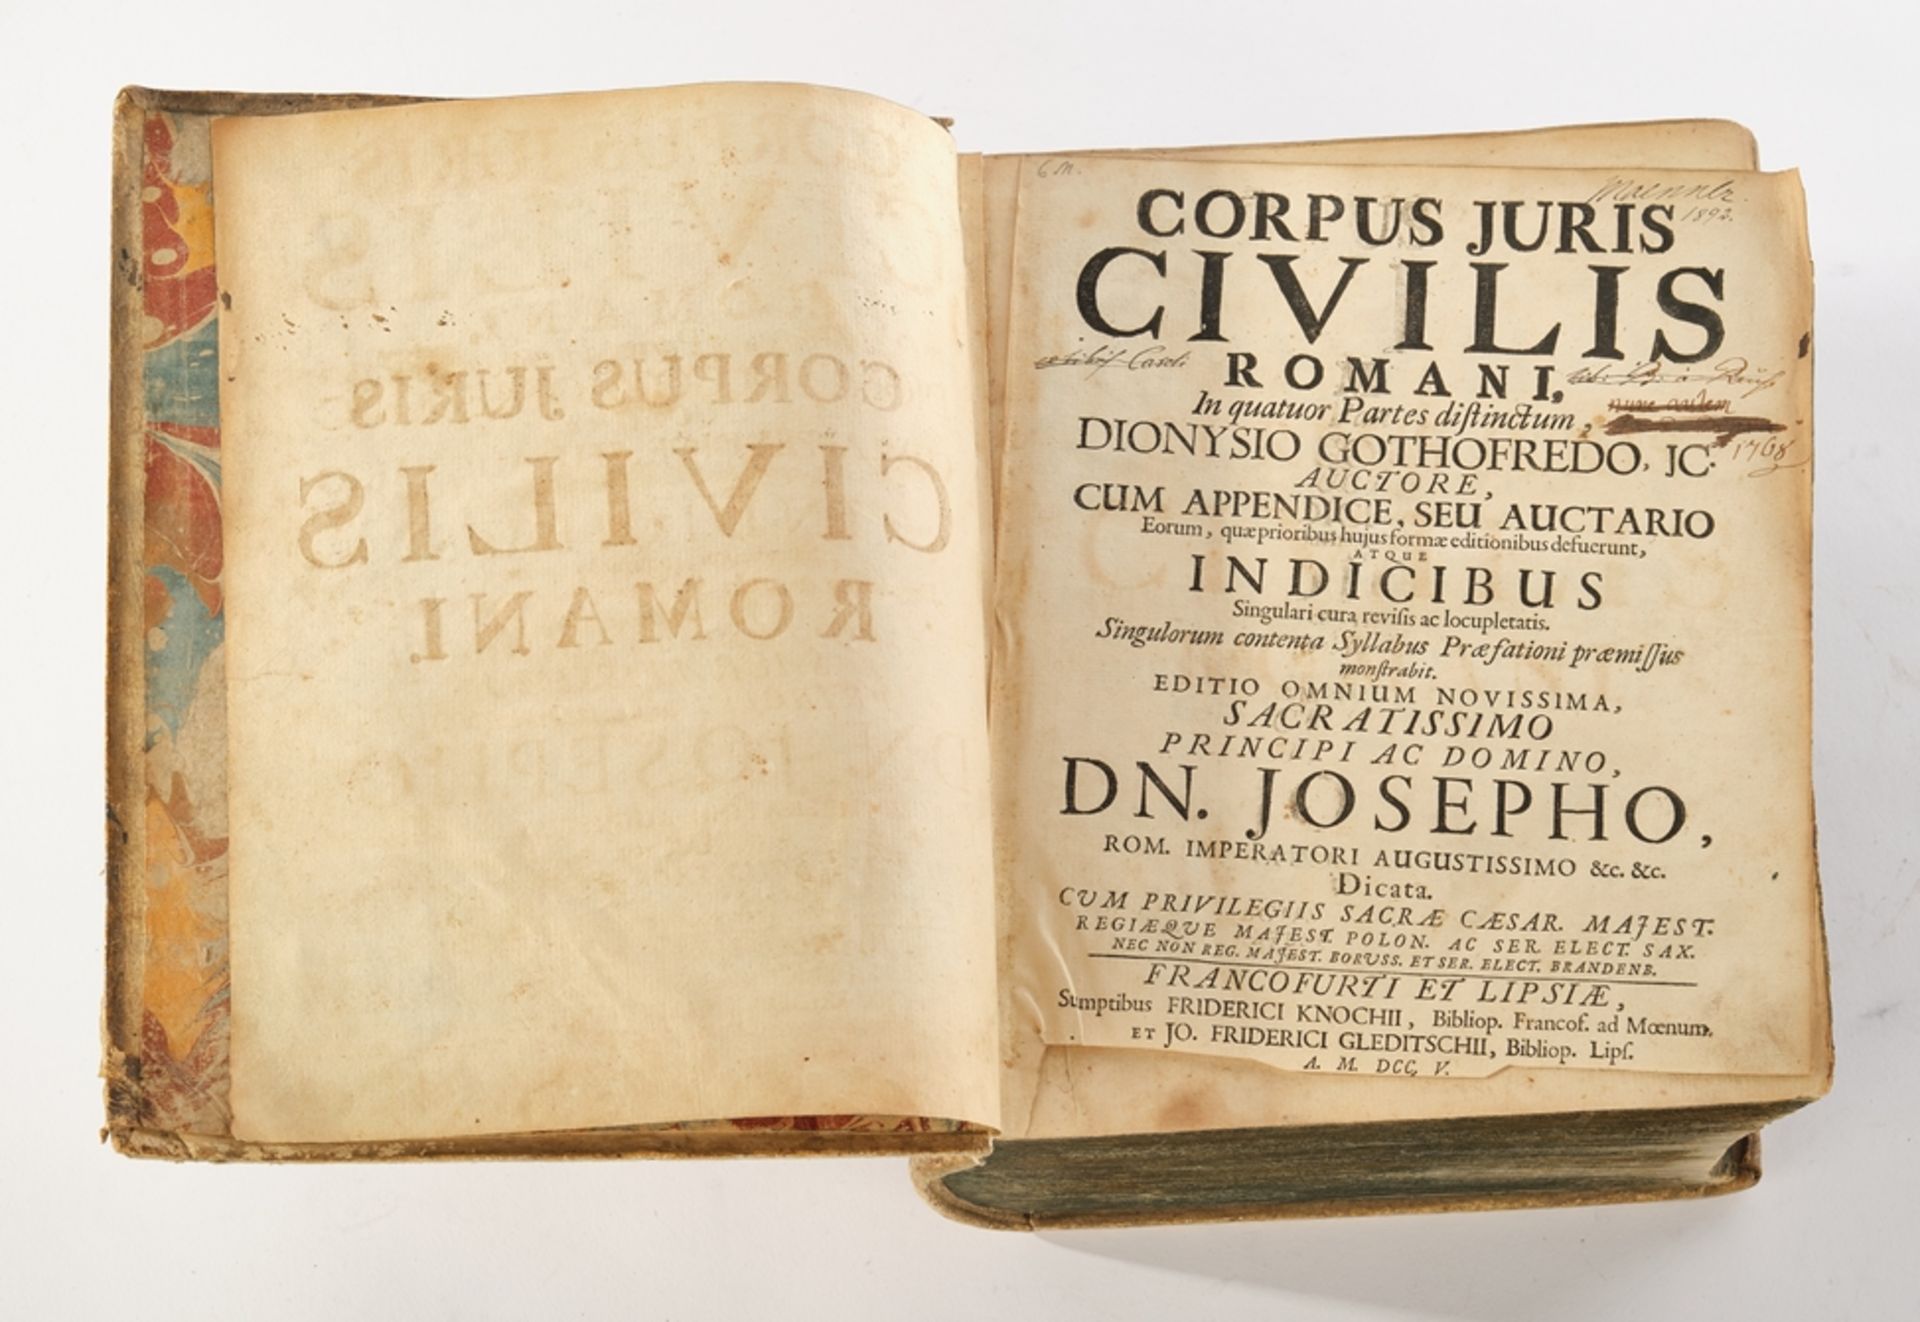 Buch, "Corpus Juris Civilis Romani, In quatuor Partes distinctum, Dionysio Gothofredo, JC, Auctore,